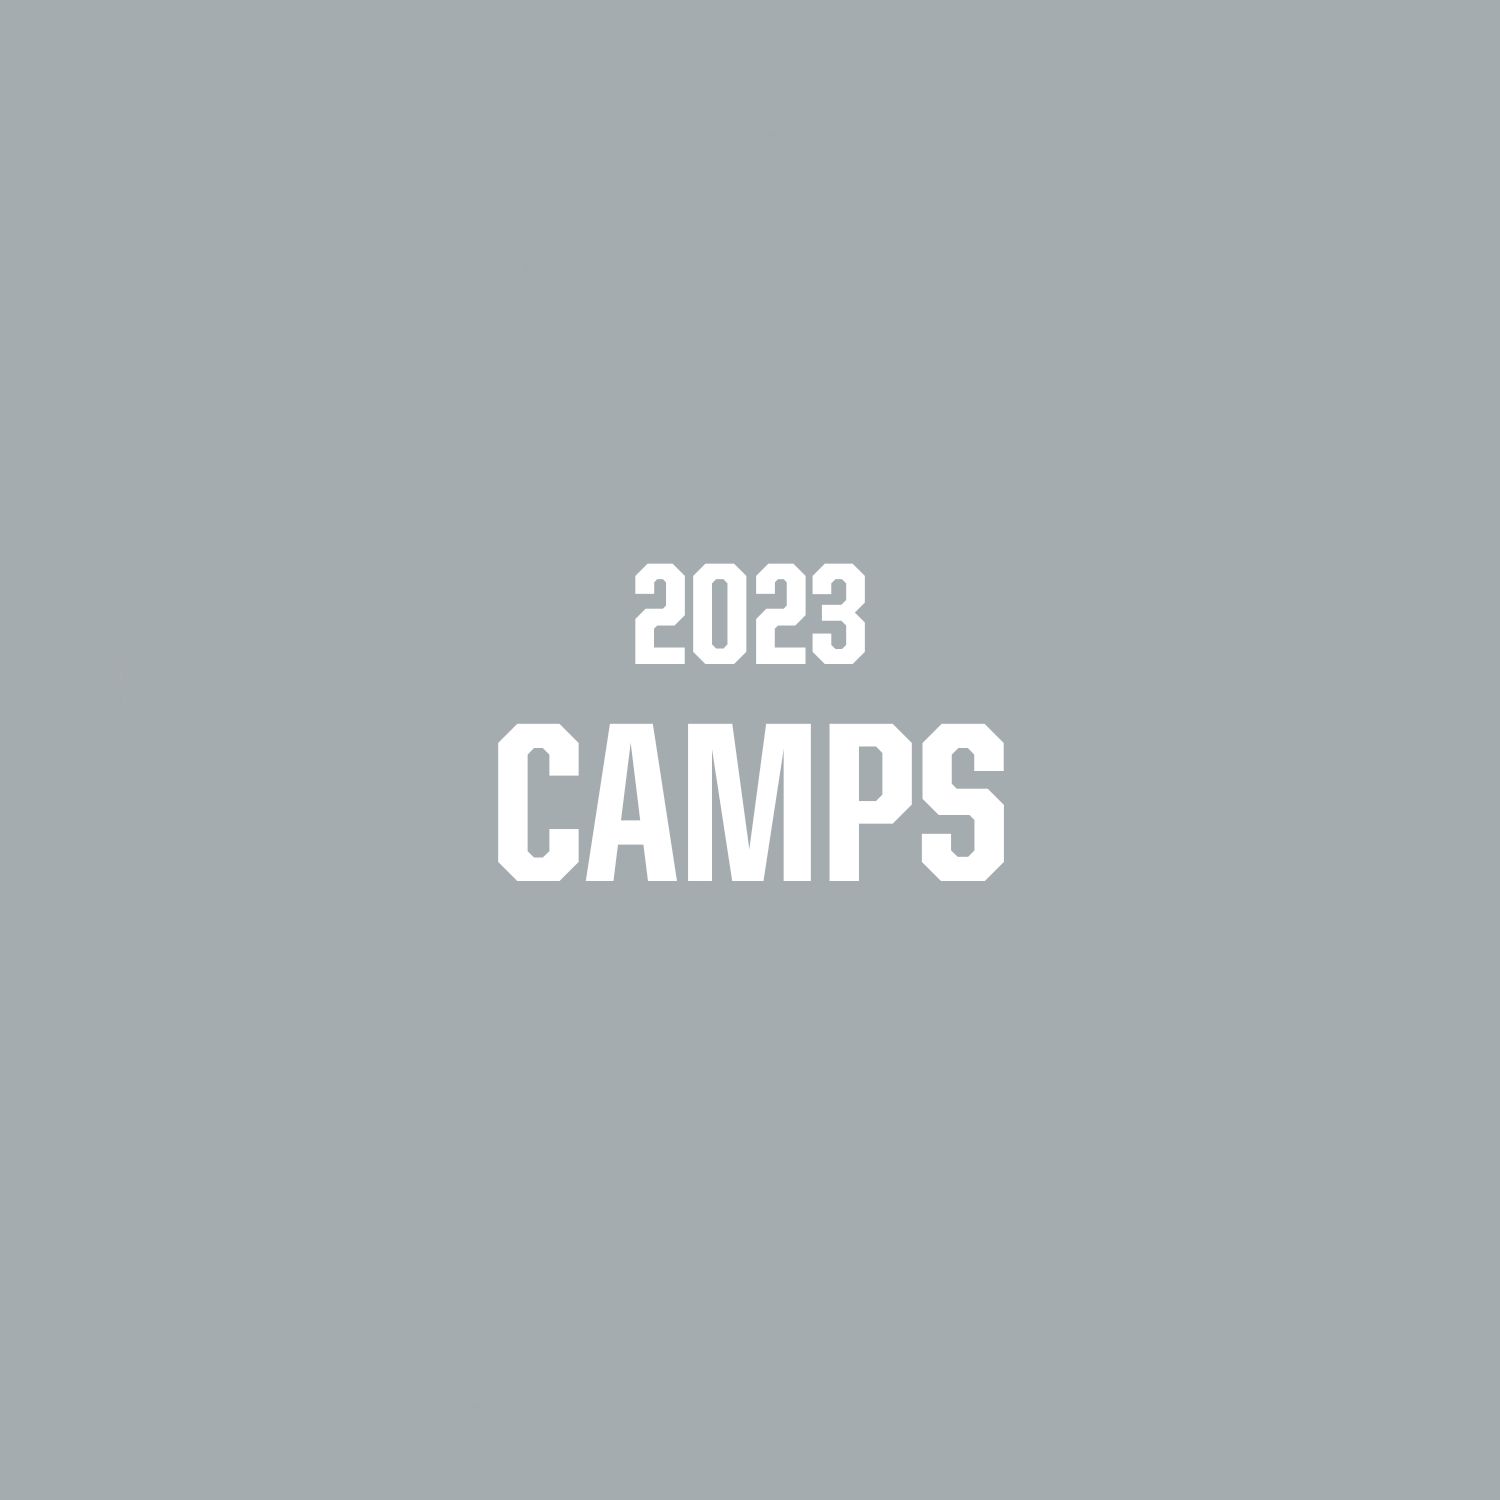 OEFC Elite ID Camps 2023